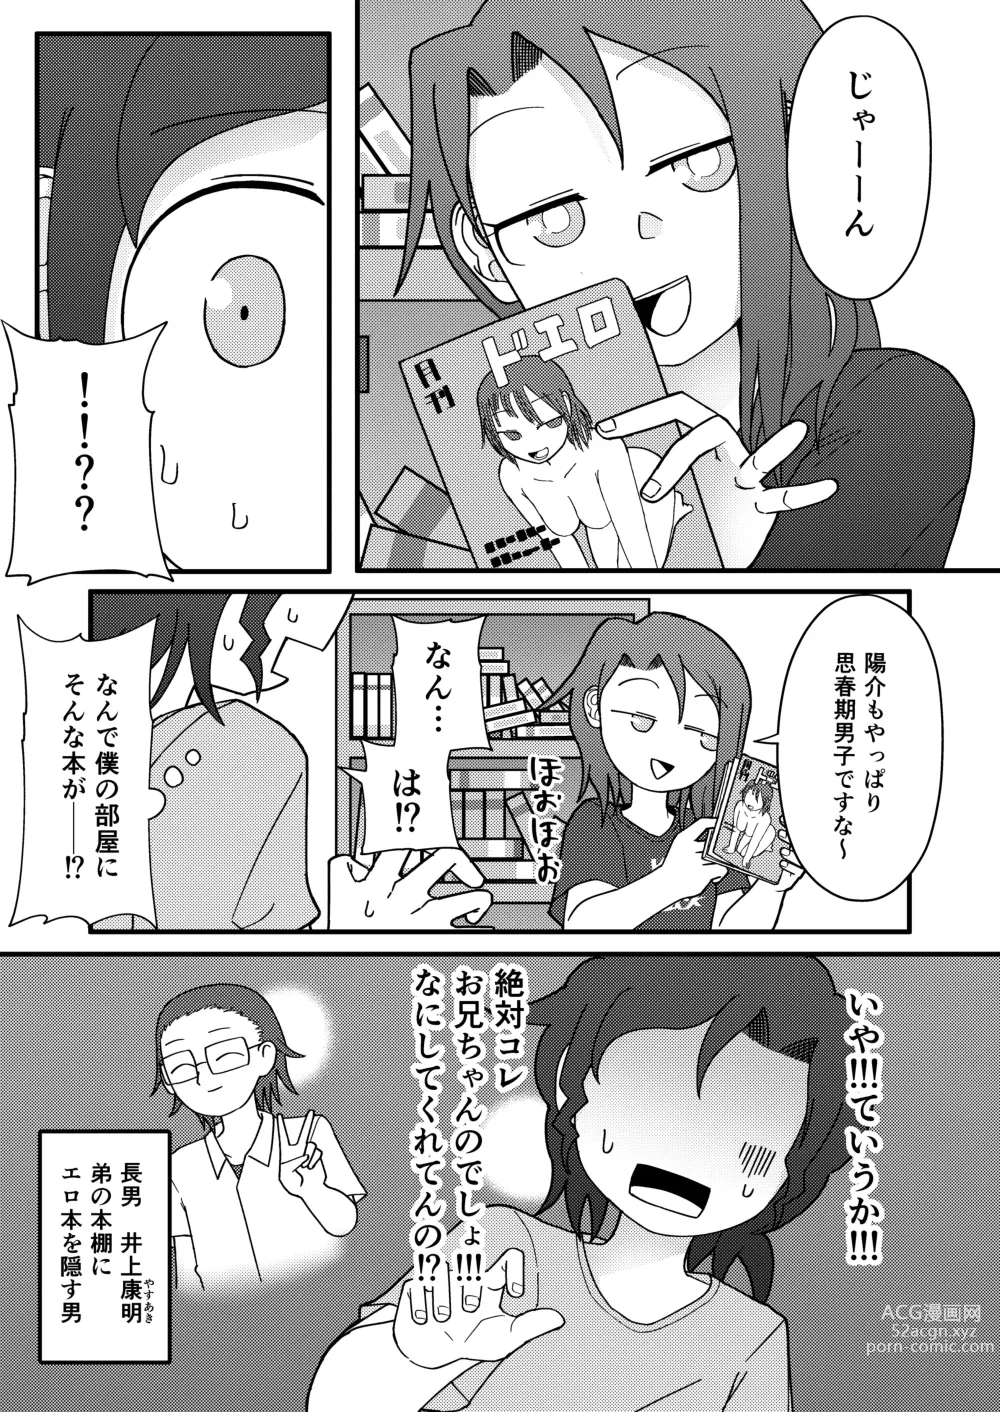 Page 8 of doujinshi Show Me!